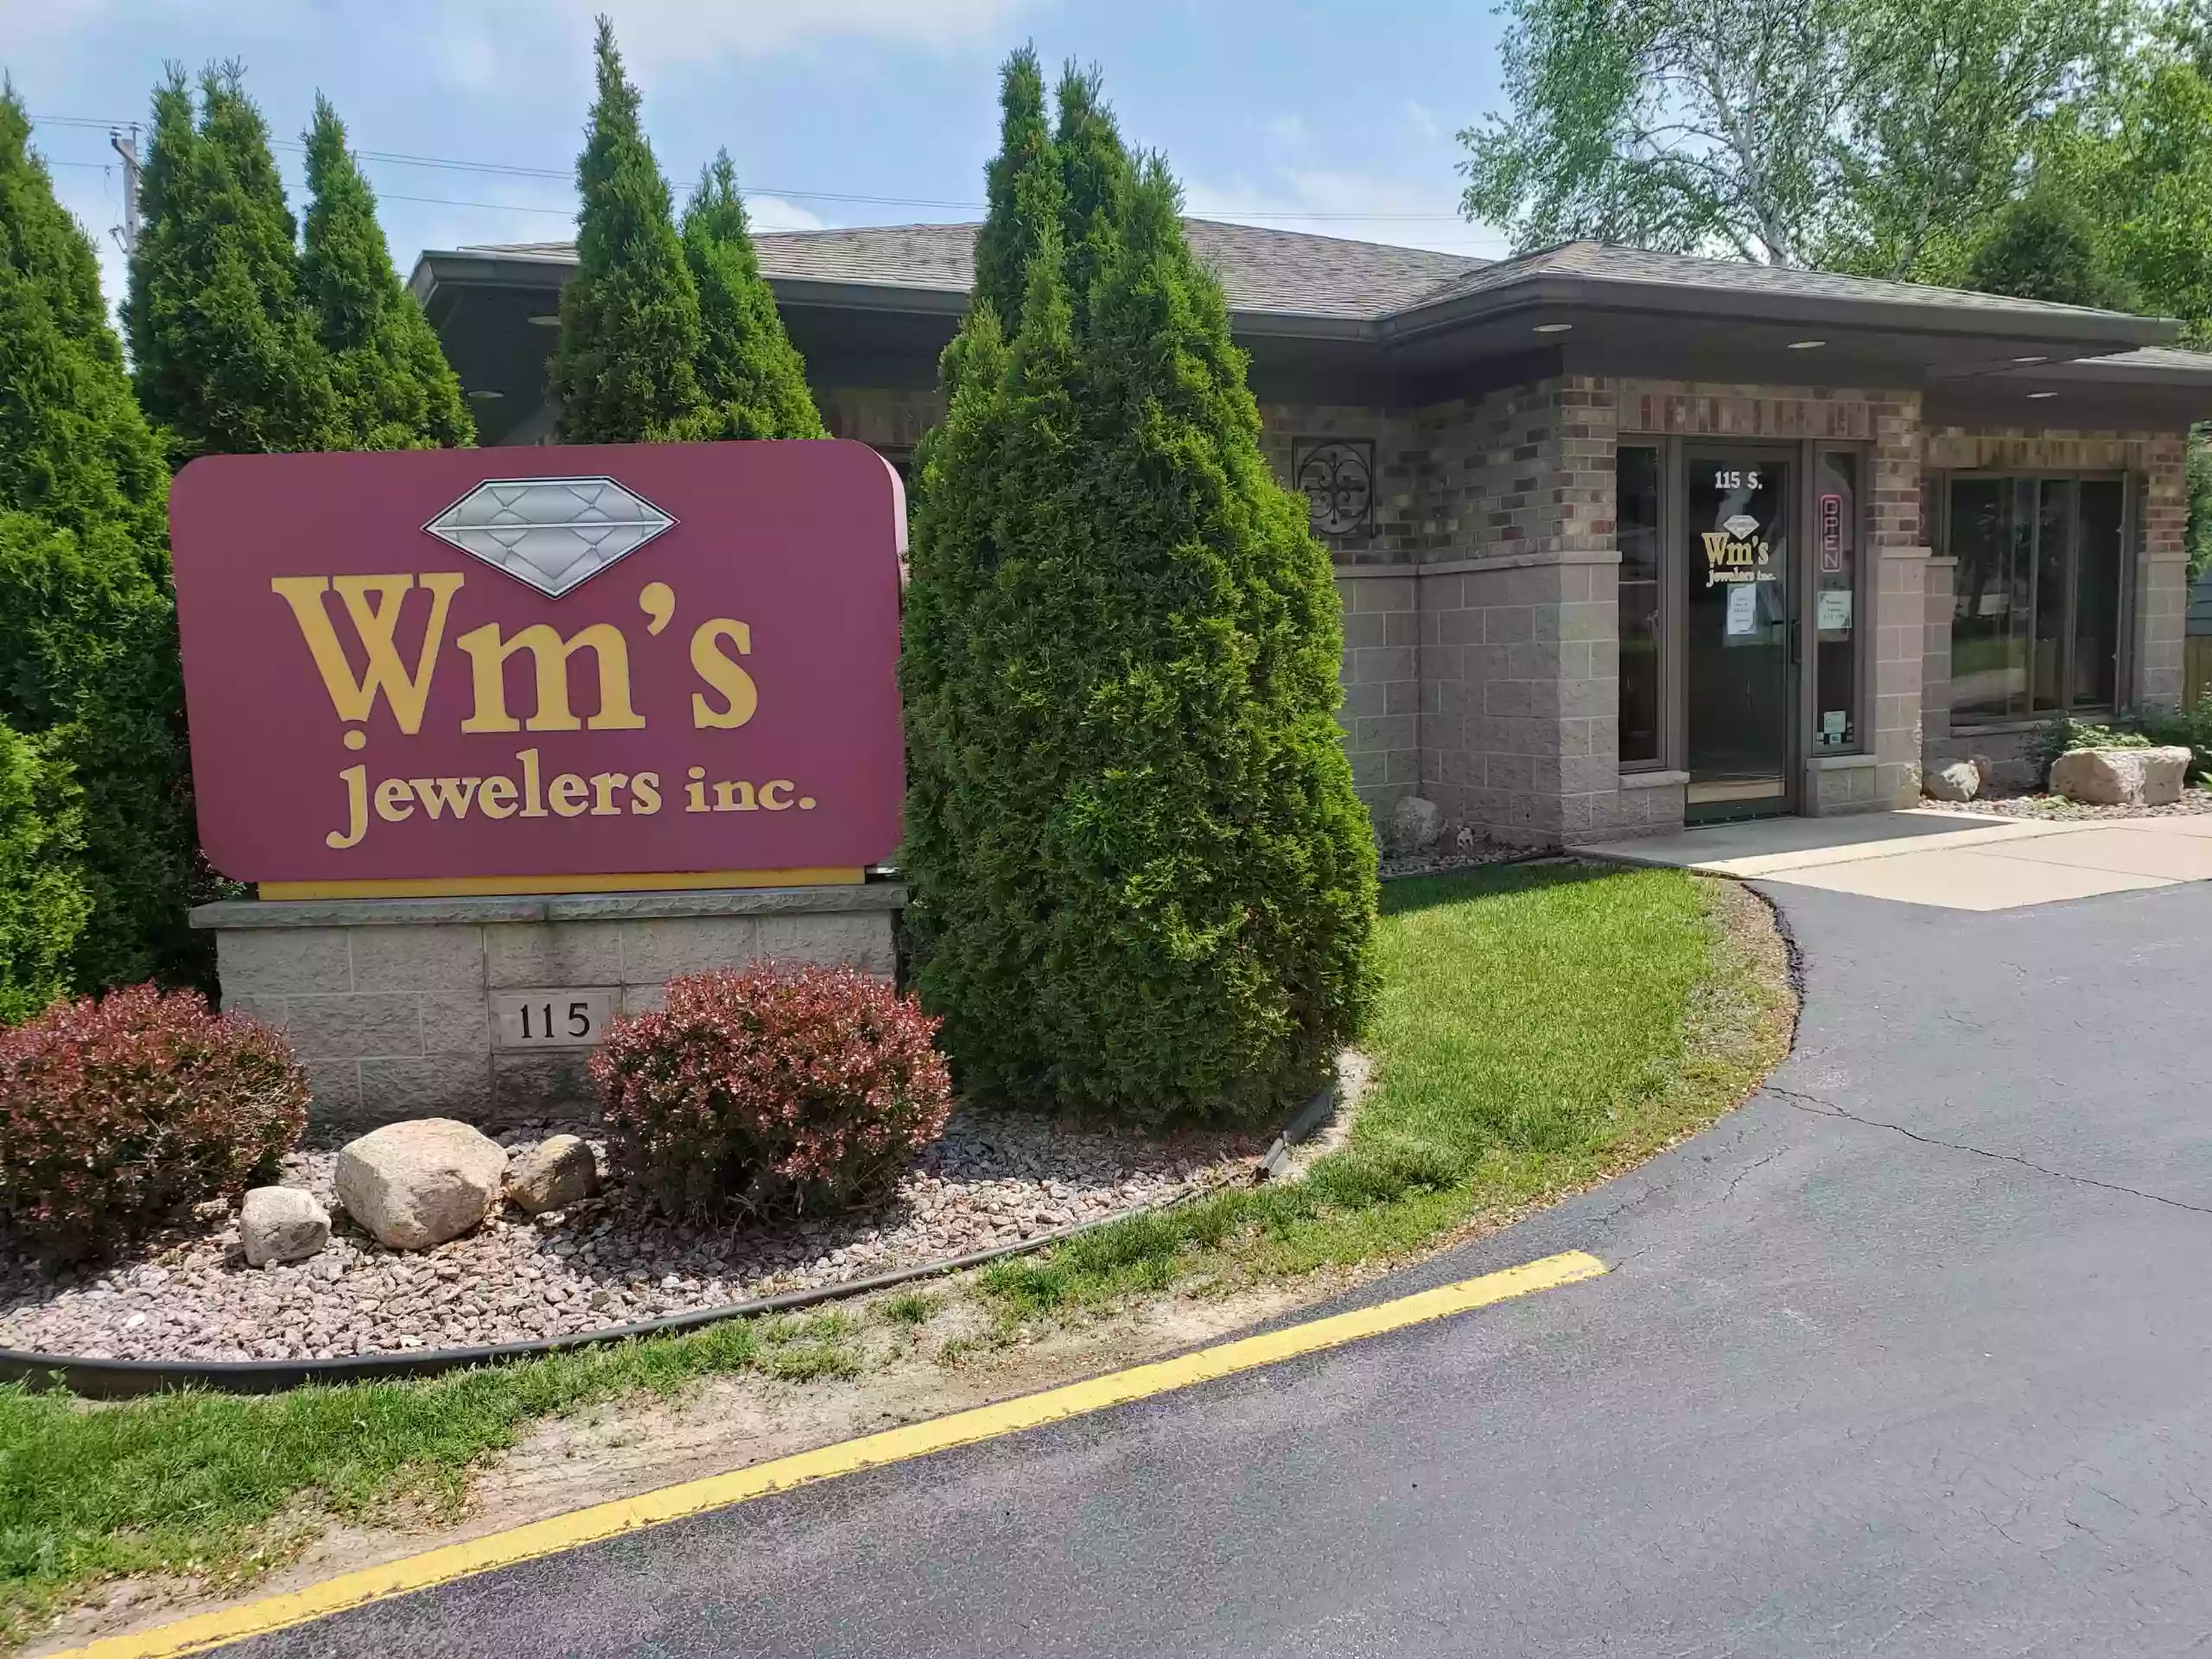 Wm's Jewelers, Inc